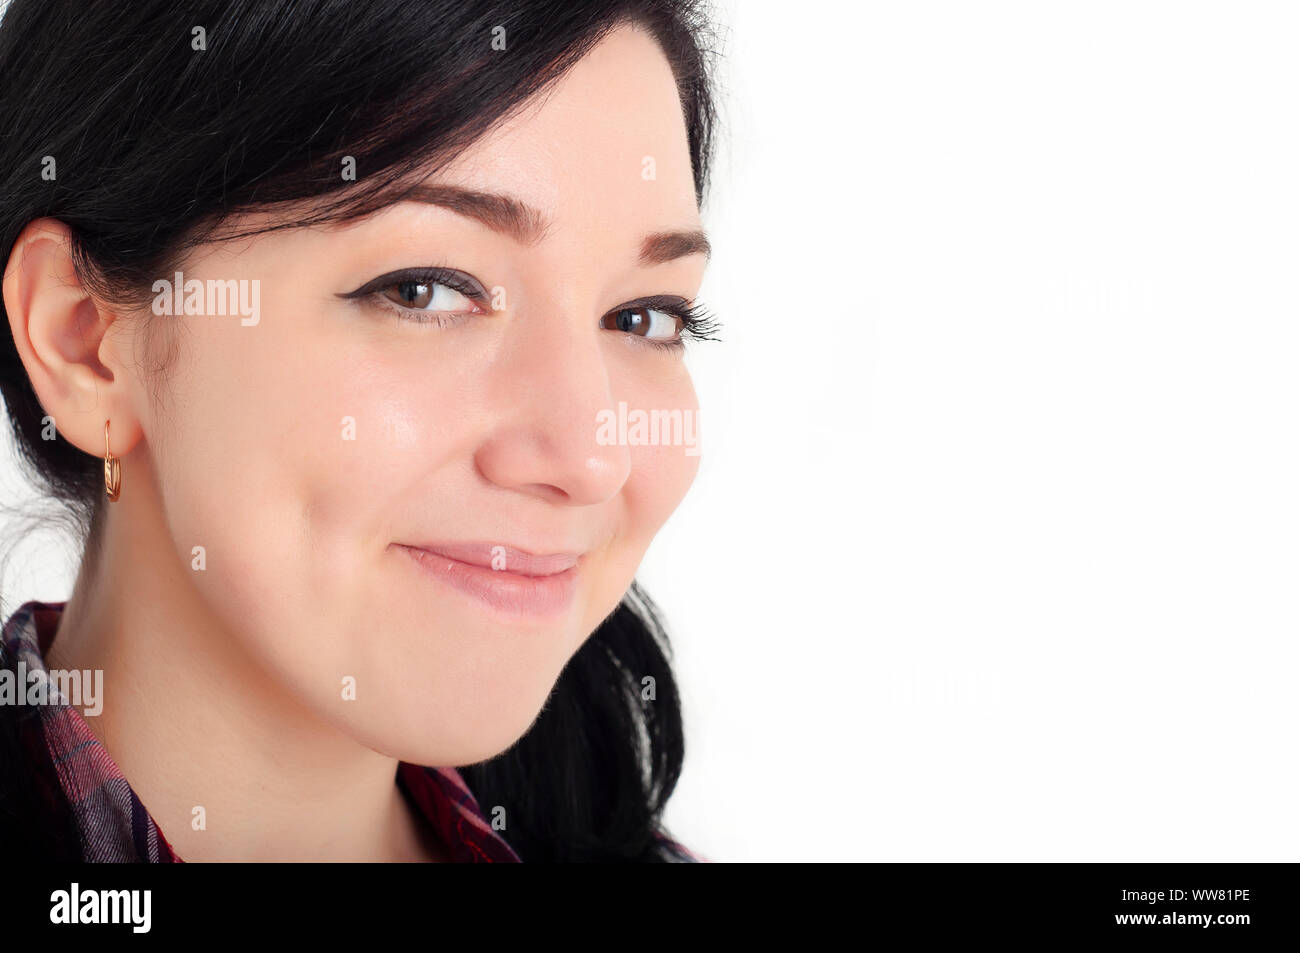 Ein junges fröhliches schönes Brünette Mädchen mit niedlichen Grübchen auf ihren Wangen lächelt und schaut mit Glück in ihren Augen auf die Kamera. Weißer Hintergrund. Stockfoto